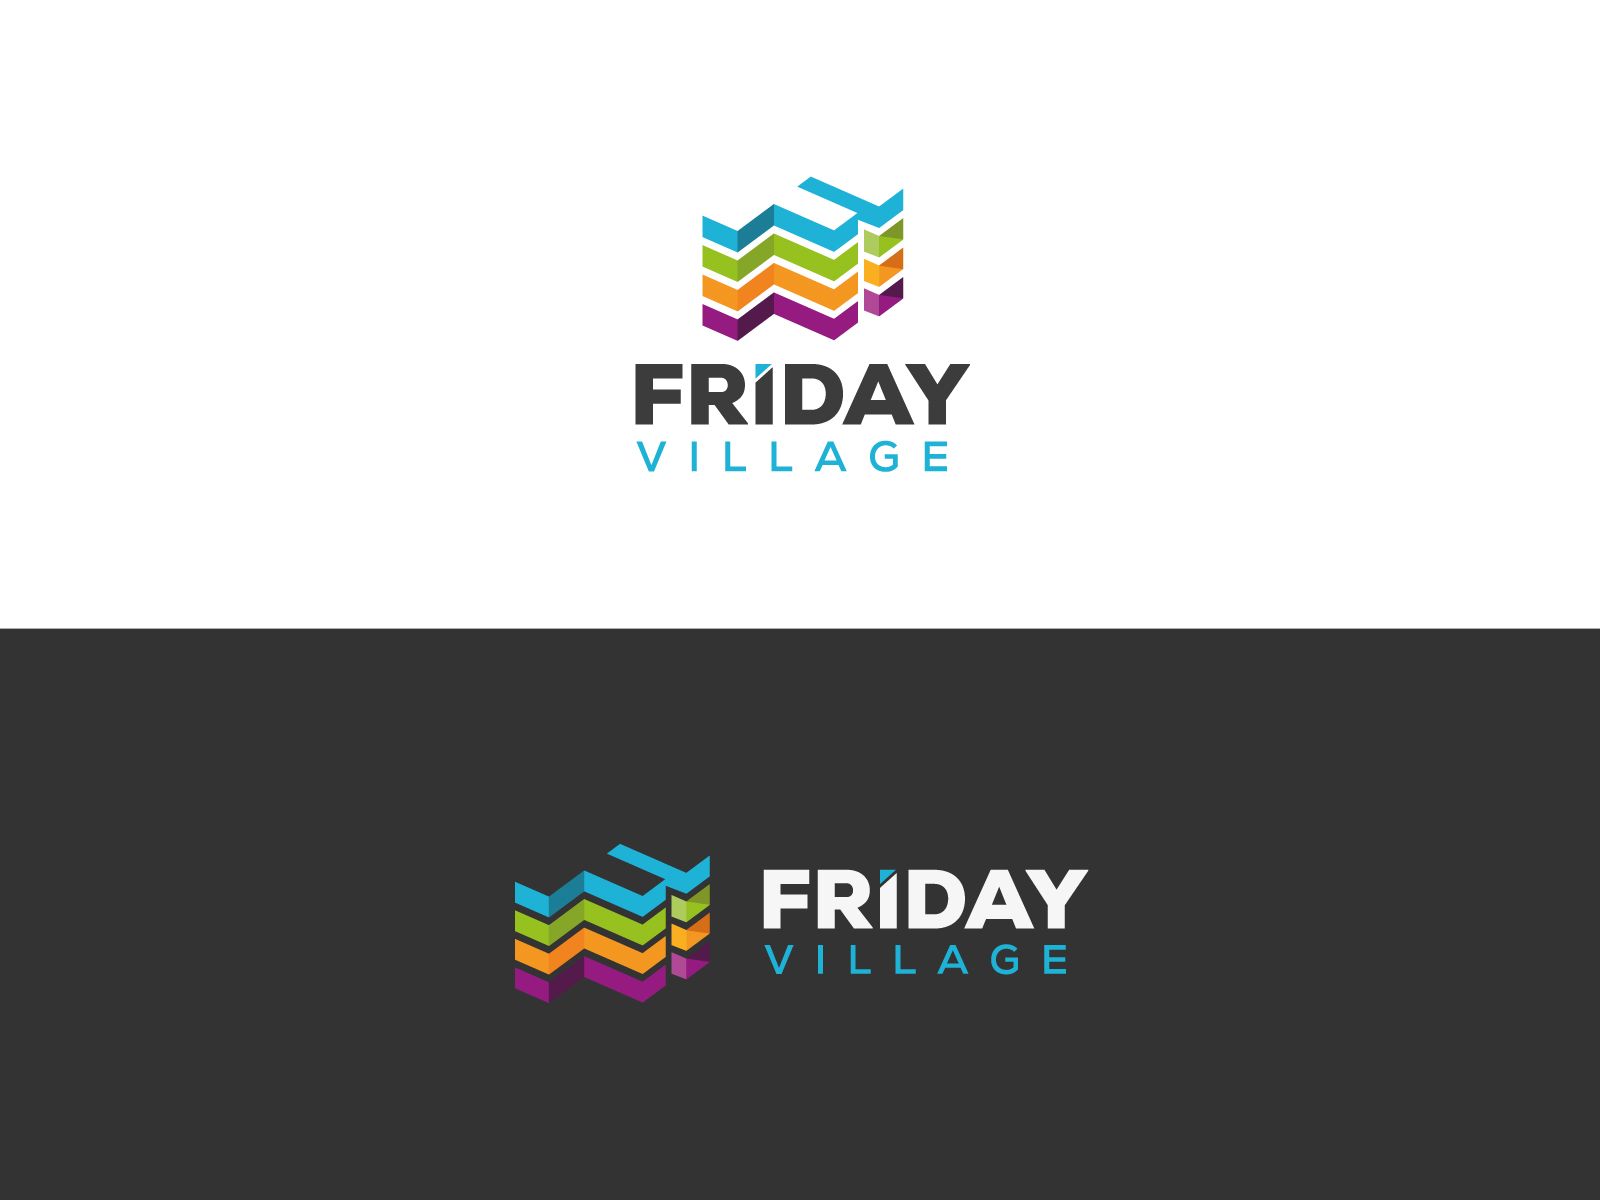 Лого и фирменный стиль для Friday Village (Фрайдей Вилледж) - дизайнер U4po4mak